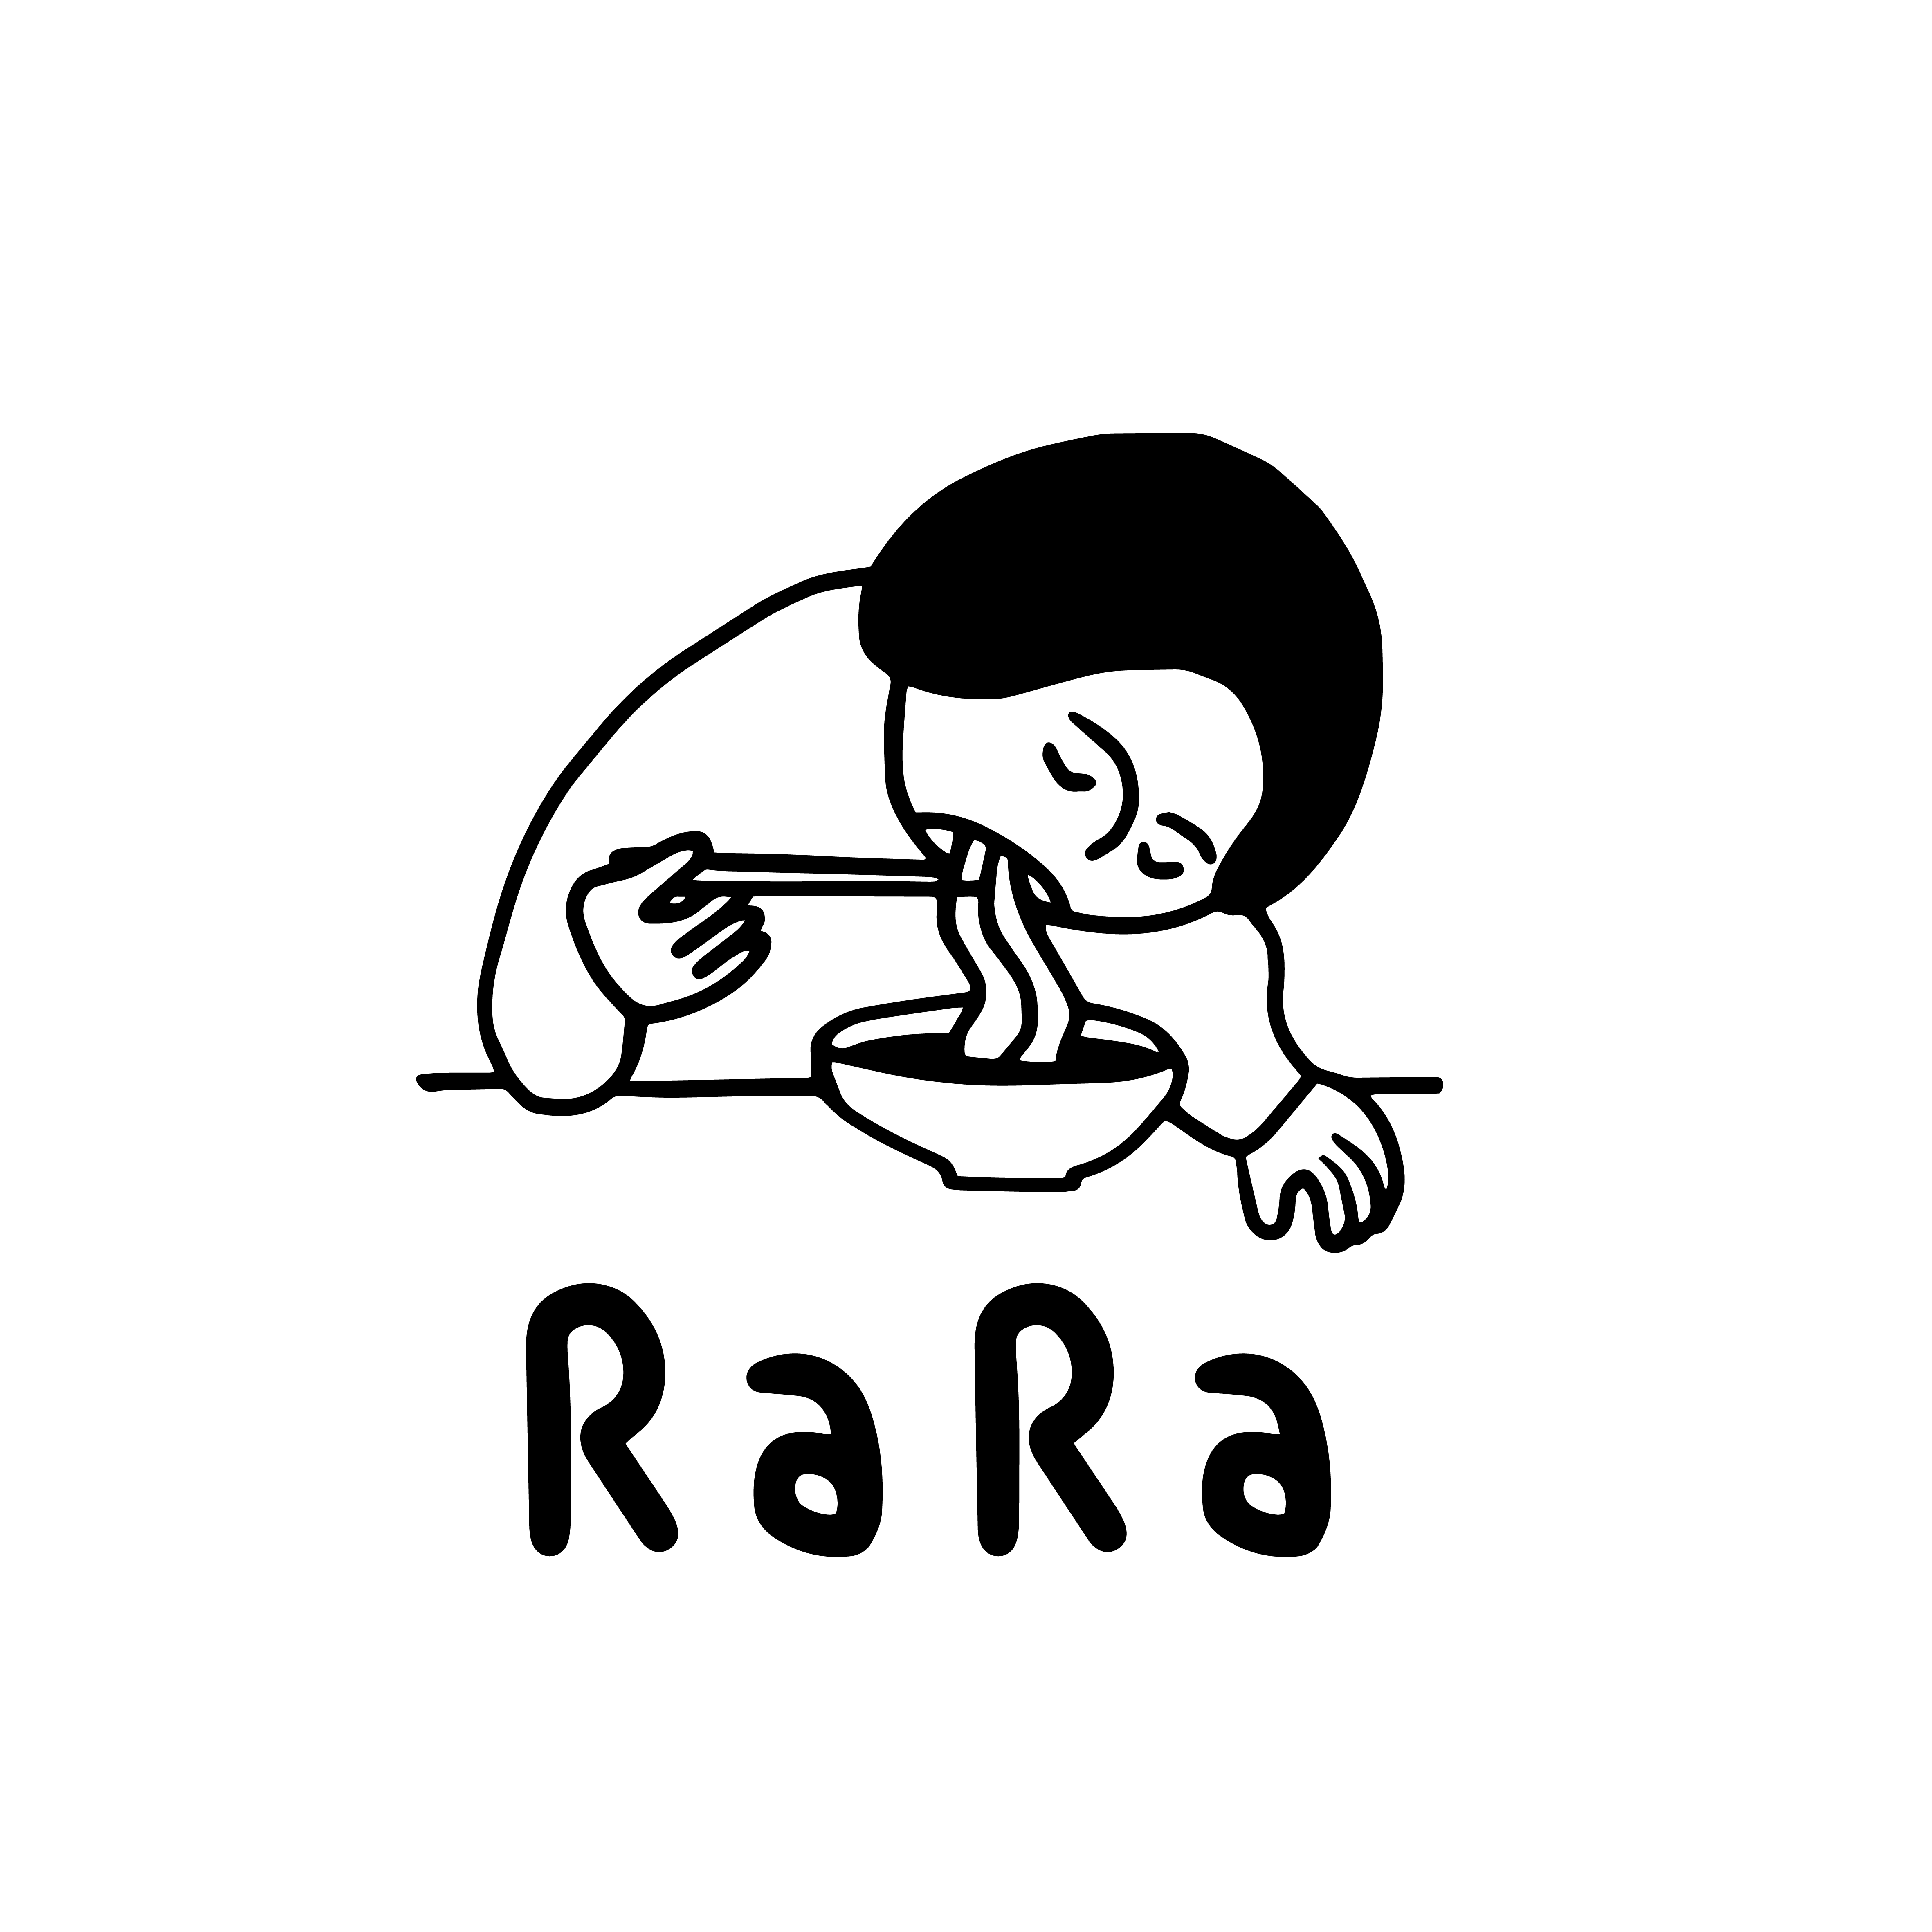 Copy of Logo Rara transparant background